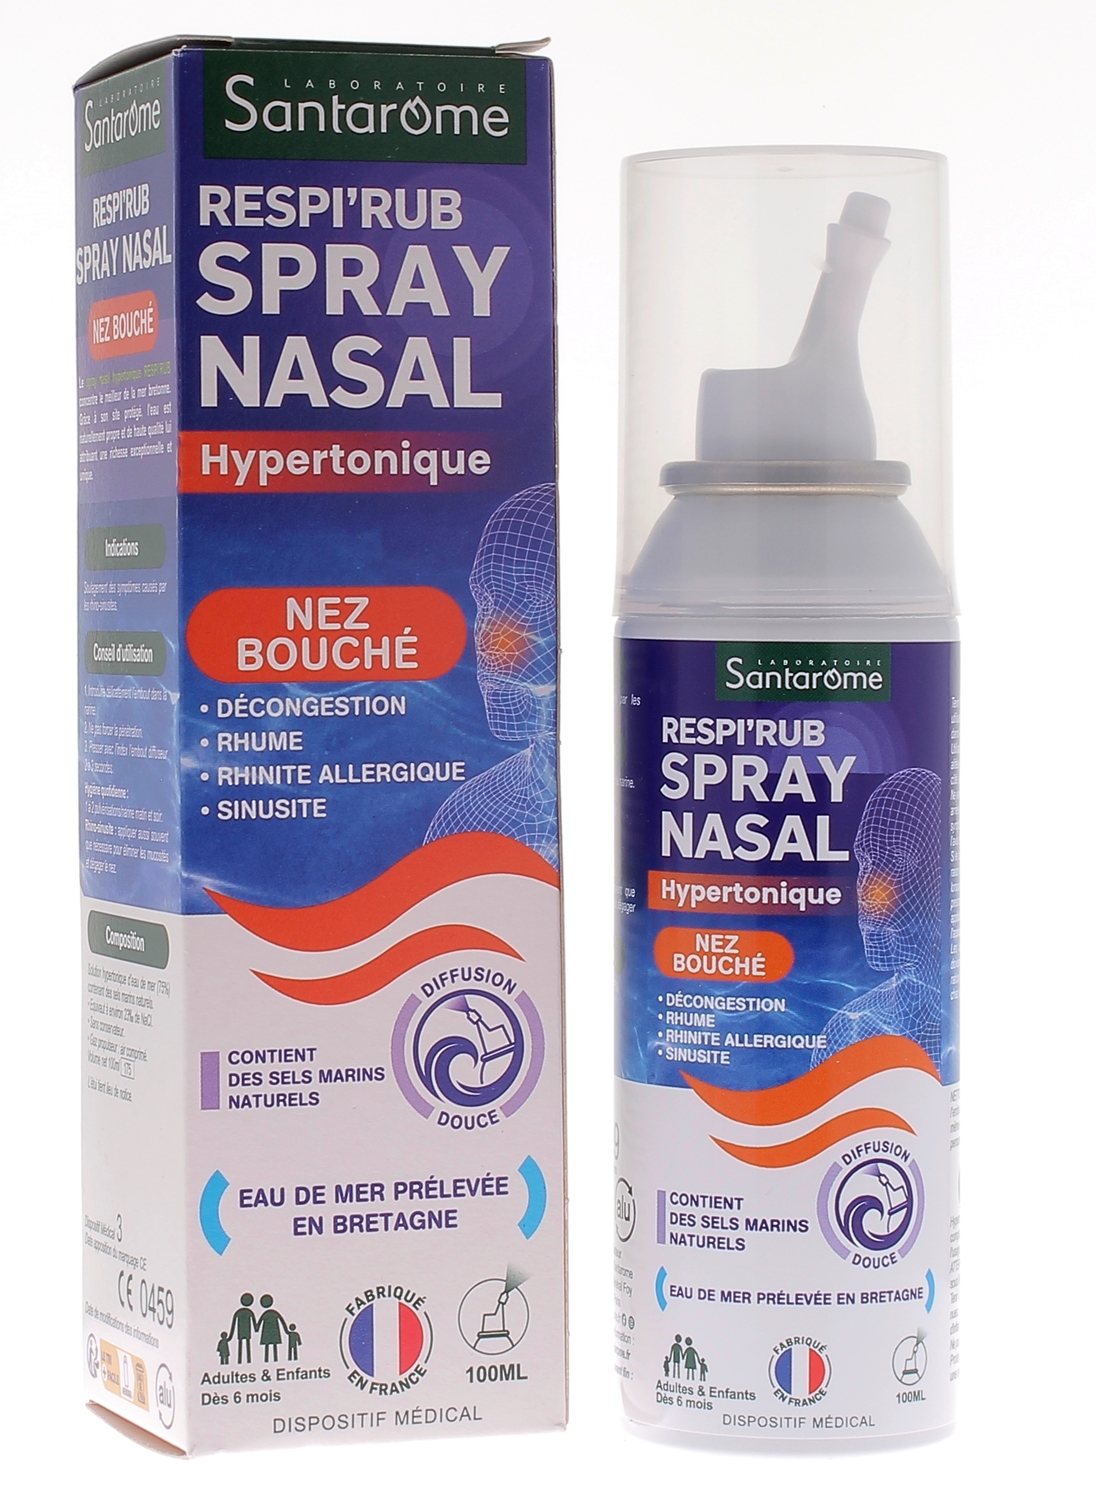 Spray nasal decongestionnant : Achat de spray pour déboucher le nez